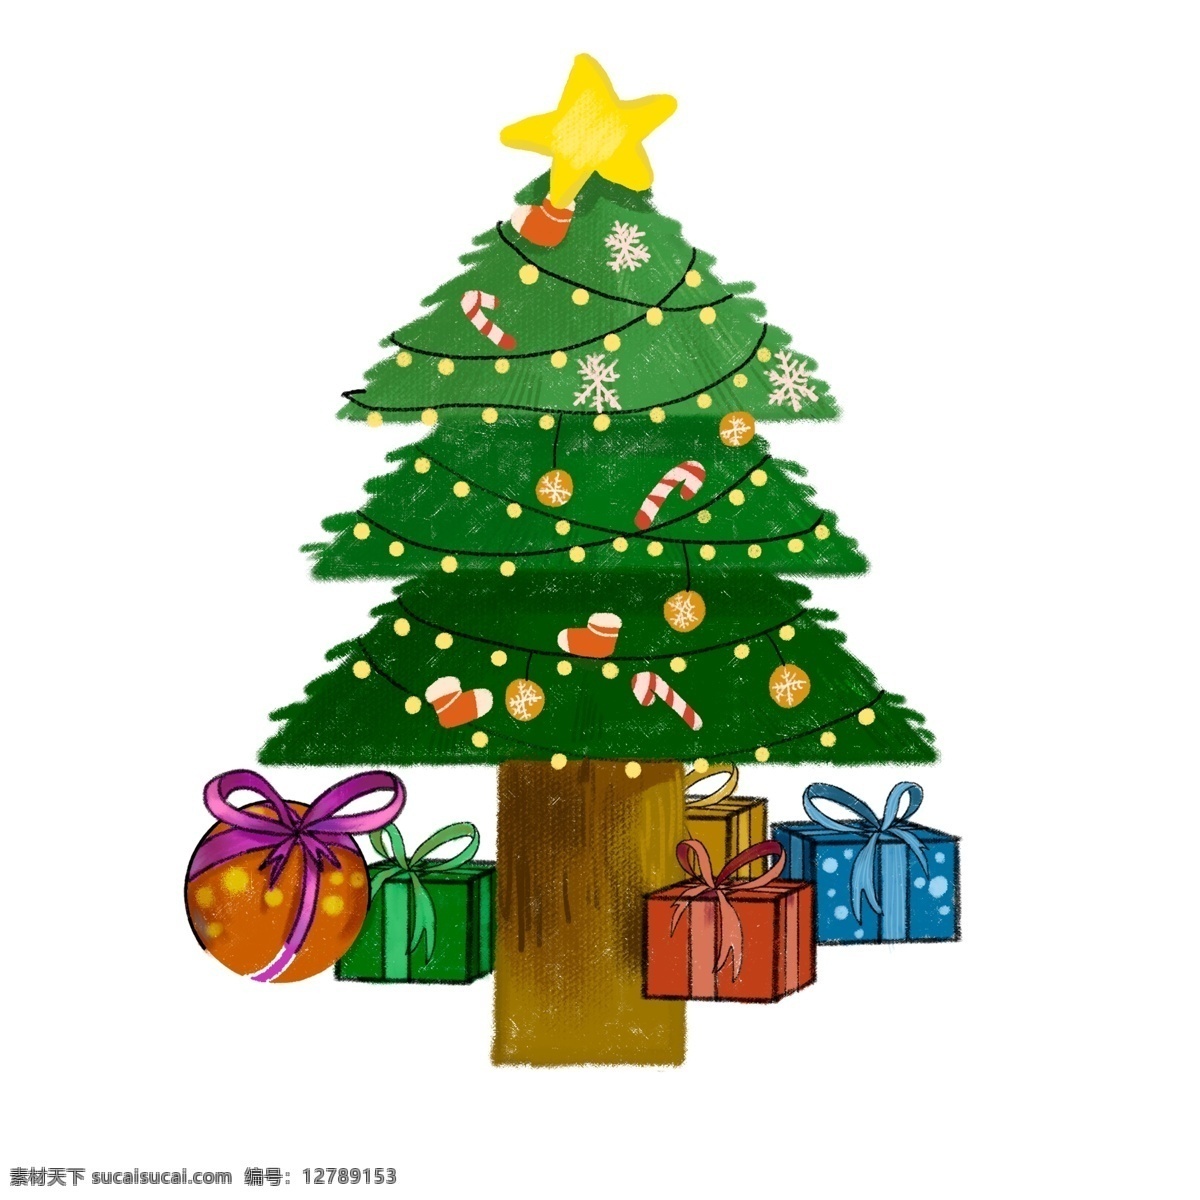 彩绘 圣诞节 圣诞 礼物 圣诞树 彩色 节日元素 psd设计 插画元素